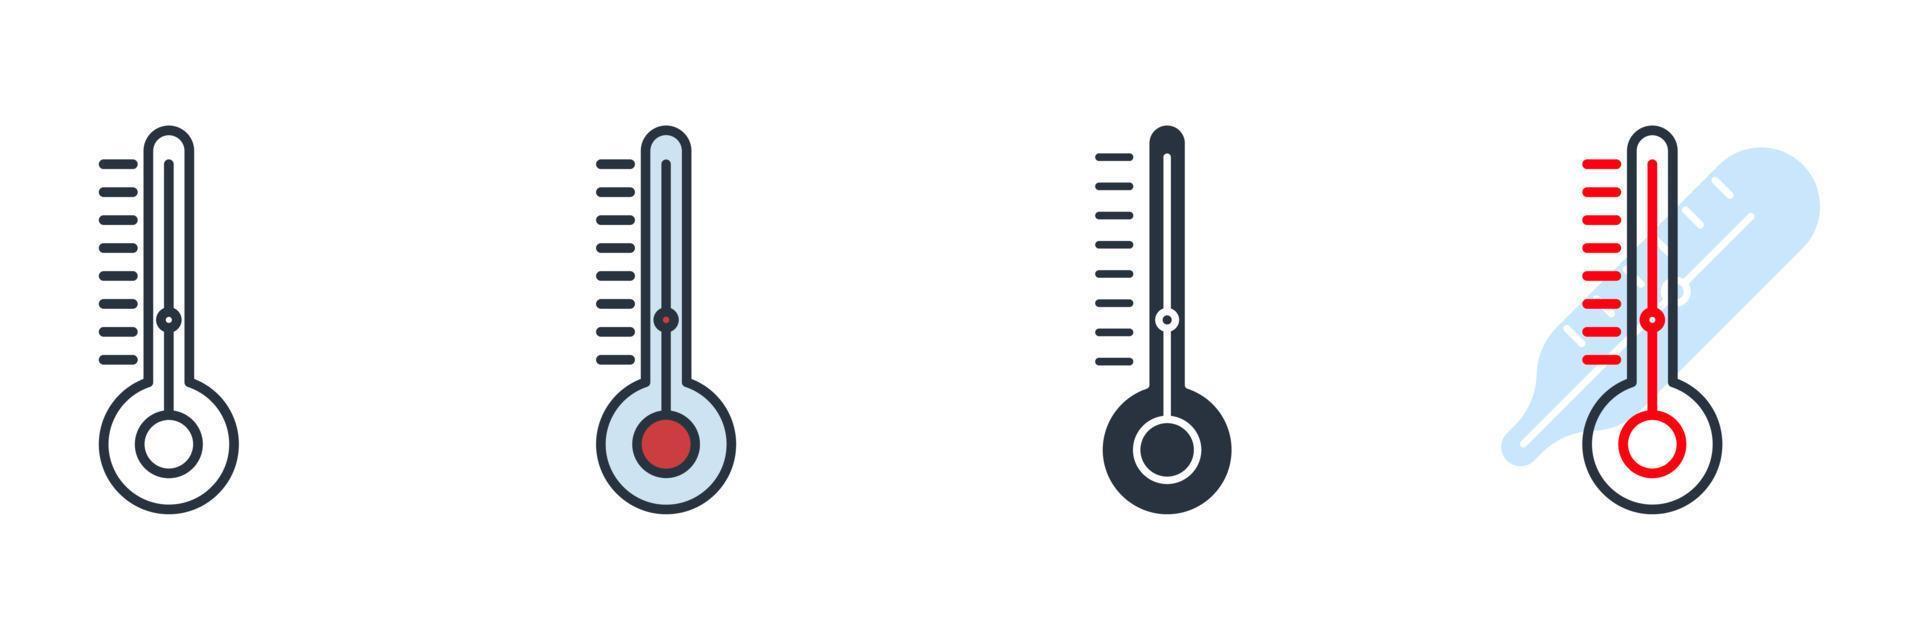 illustrazione vettoriale del logo dell'icona del termometro. modello di simbolo di misurazione per la raccolta di grafica e web design